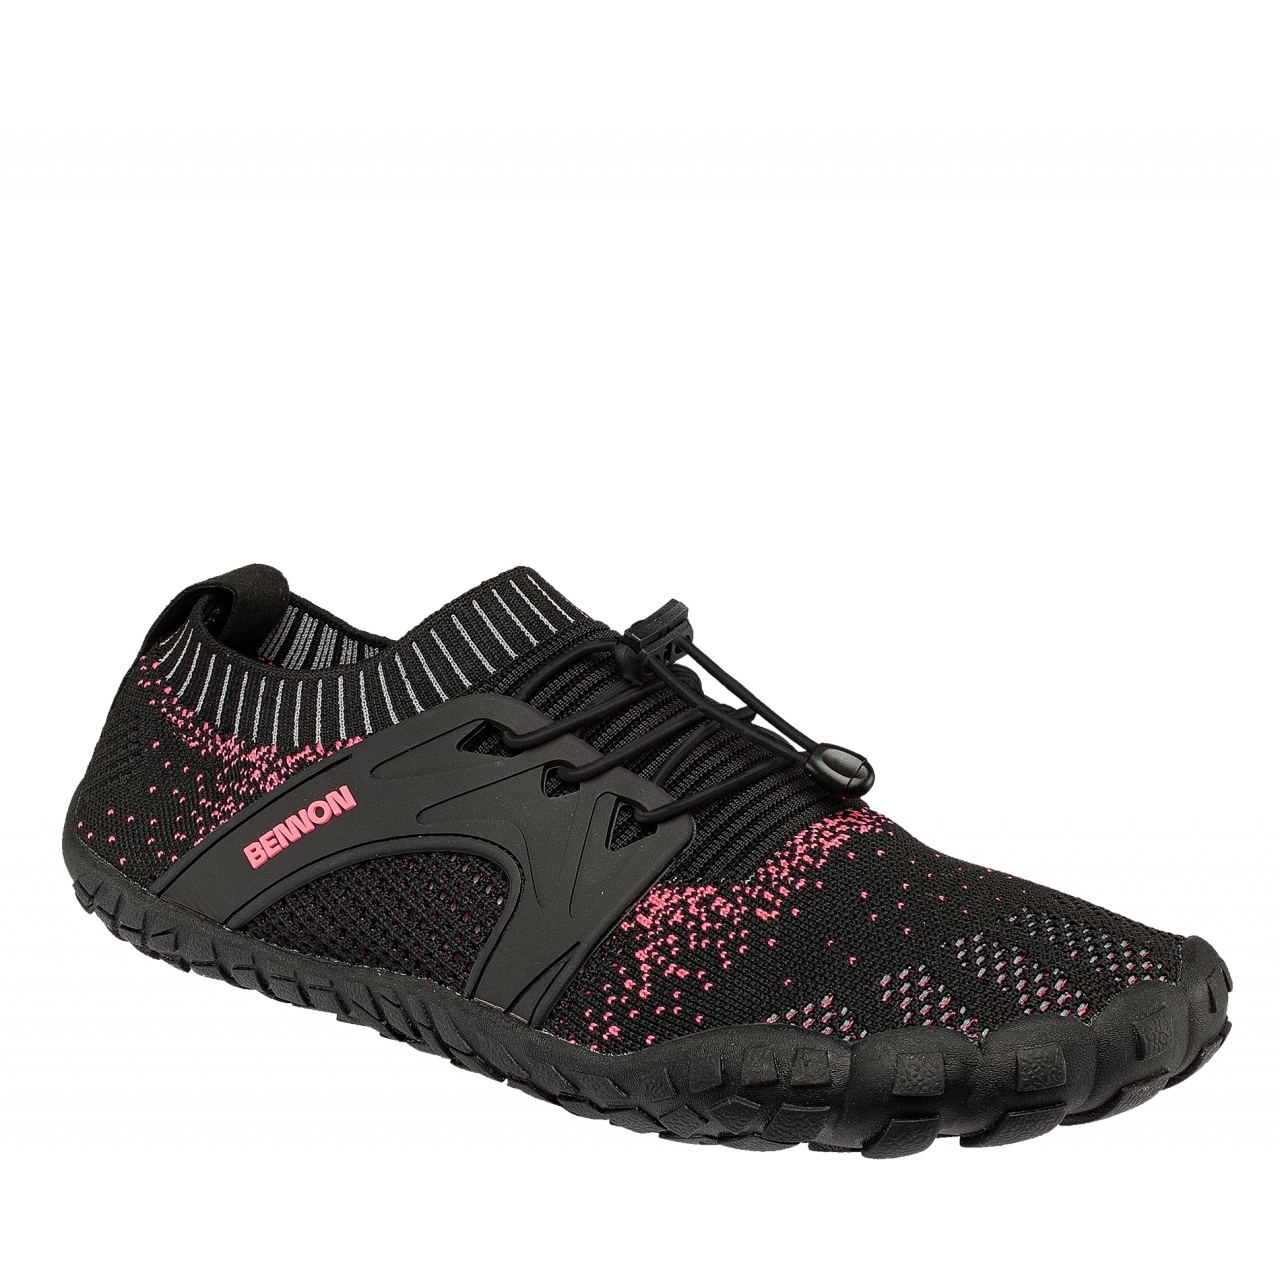 Boty Bennon Bosky Barefoot - černé-růžové, 40